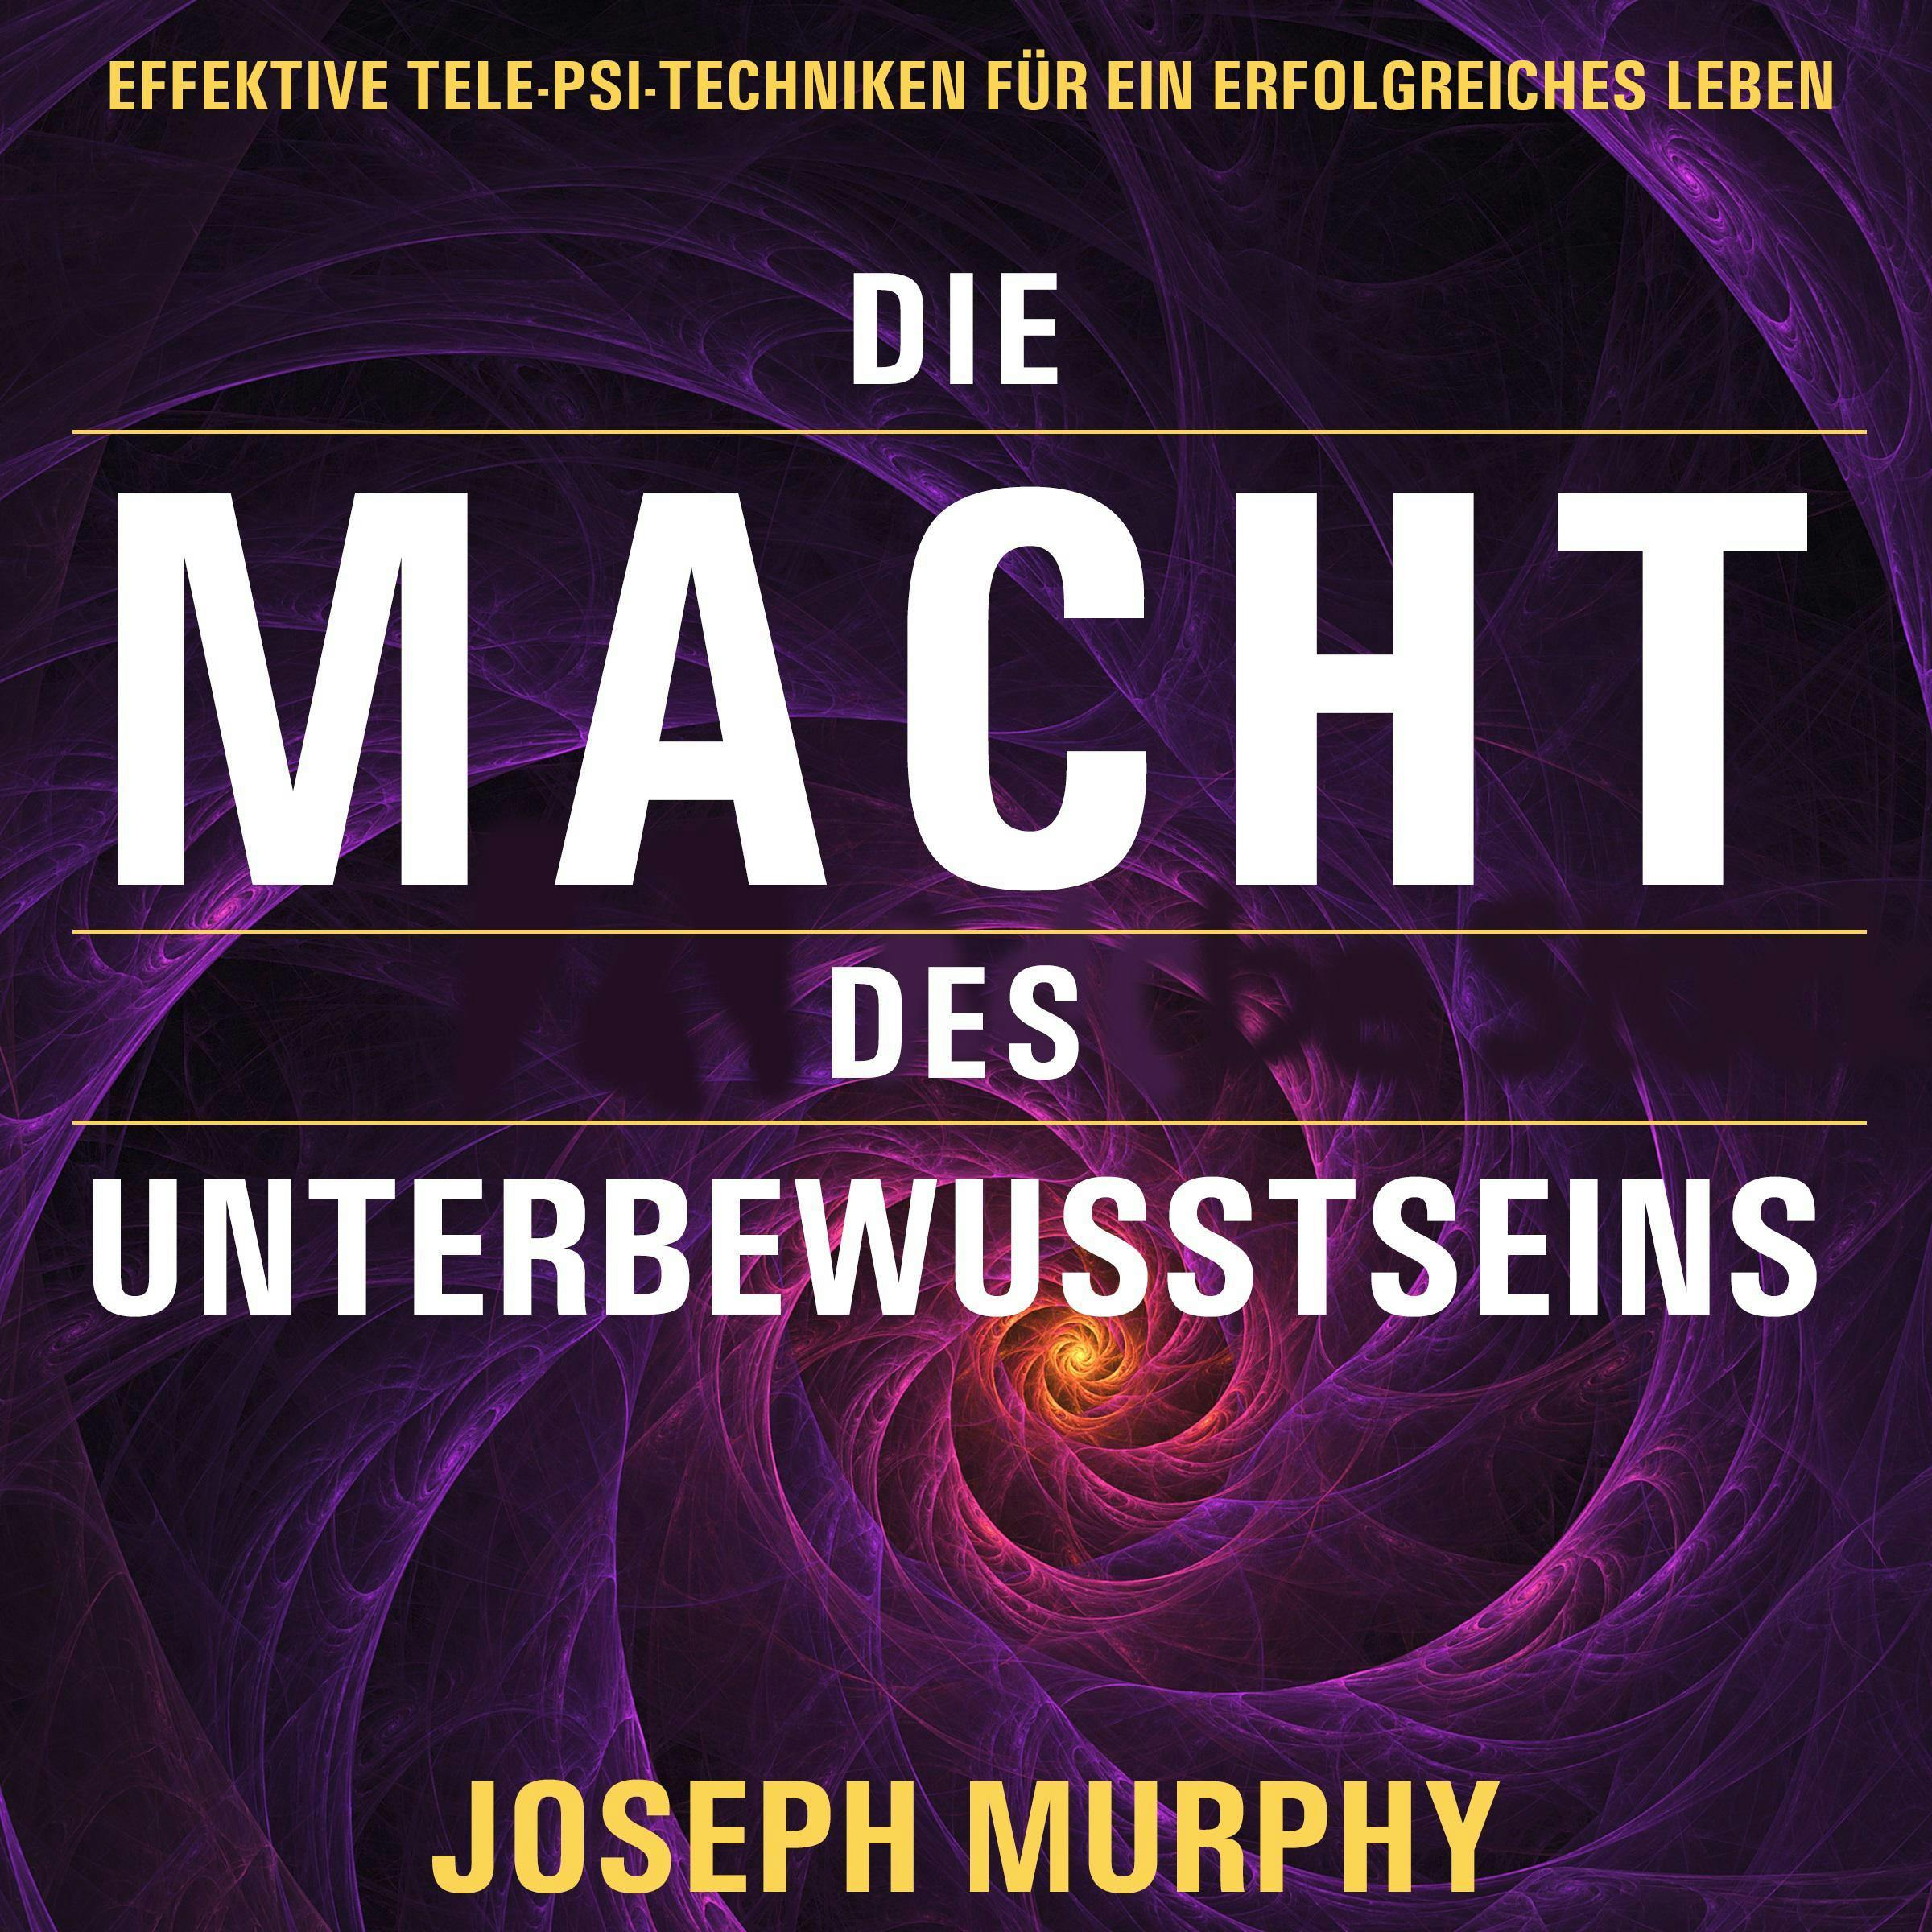 Die Macht des Unterbewusstseins: Effektive Tele-Psi-Techniken für ein erfolgreiches Leben - Joseph Murphy